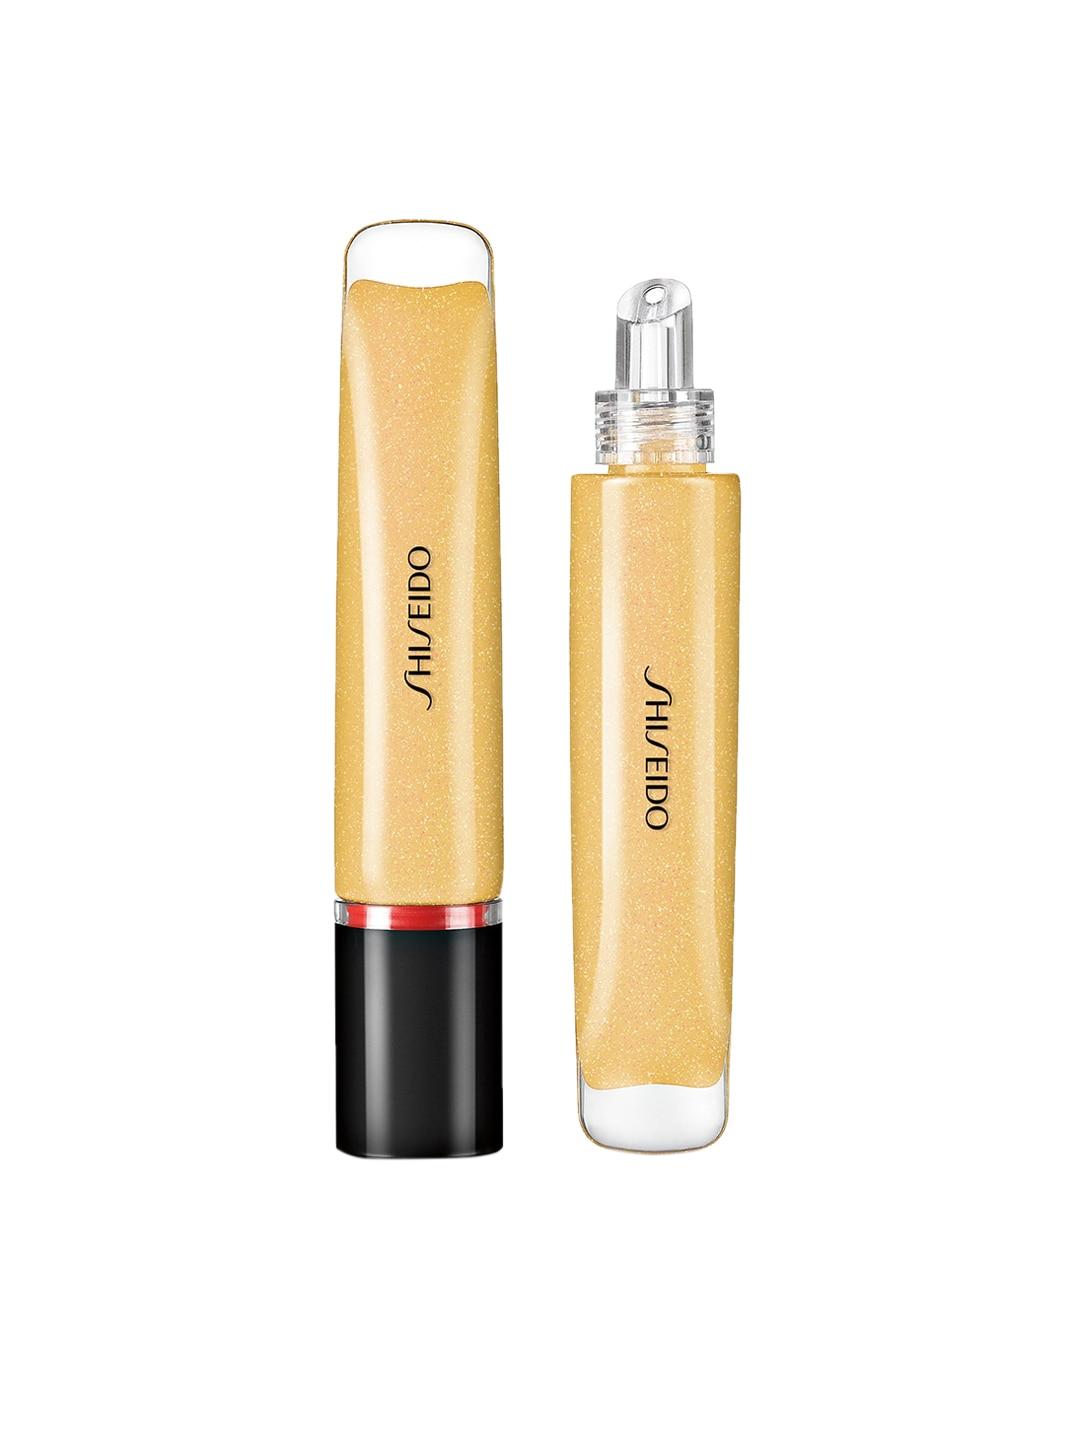 shiseido shimmer gelgloss kogane gold 01 - 9 ml